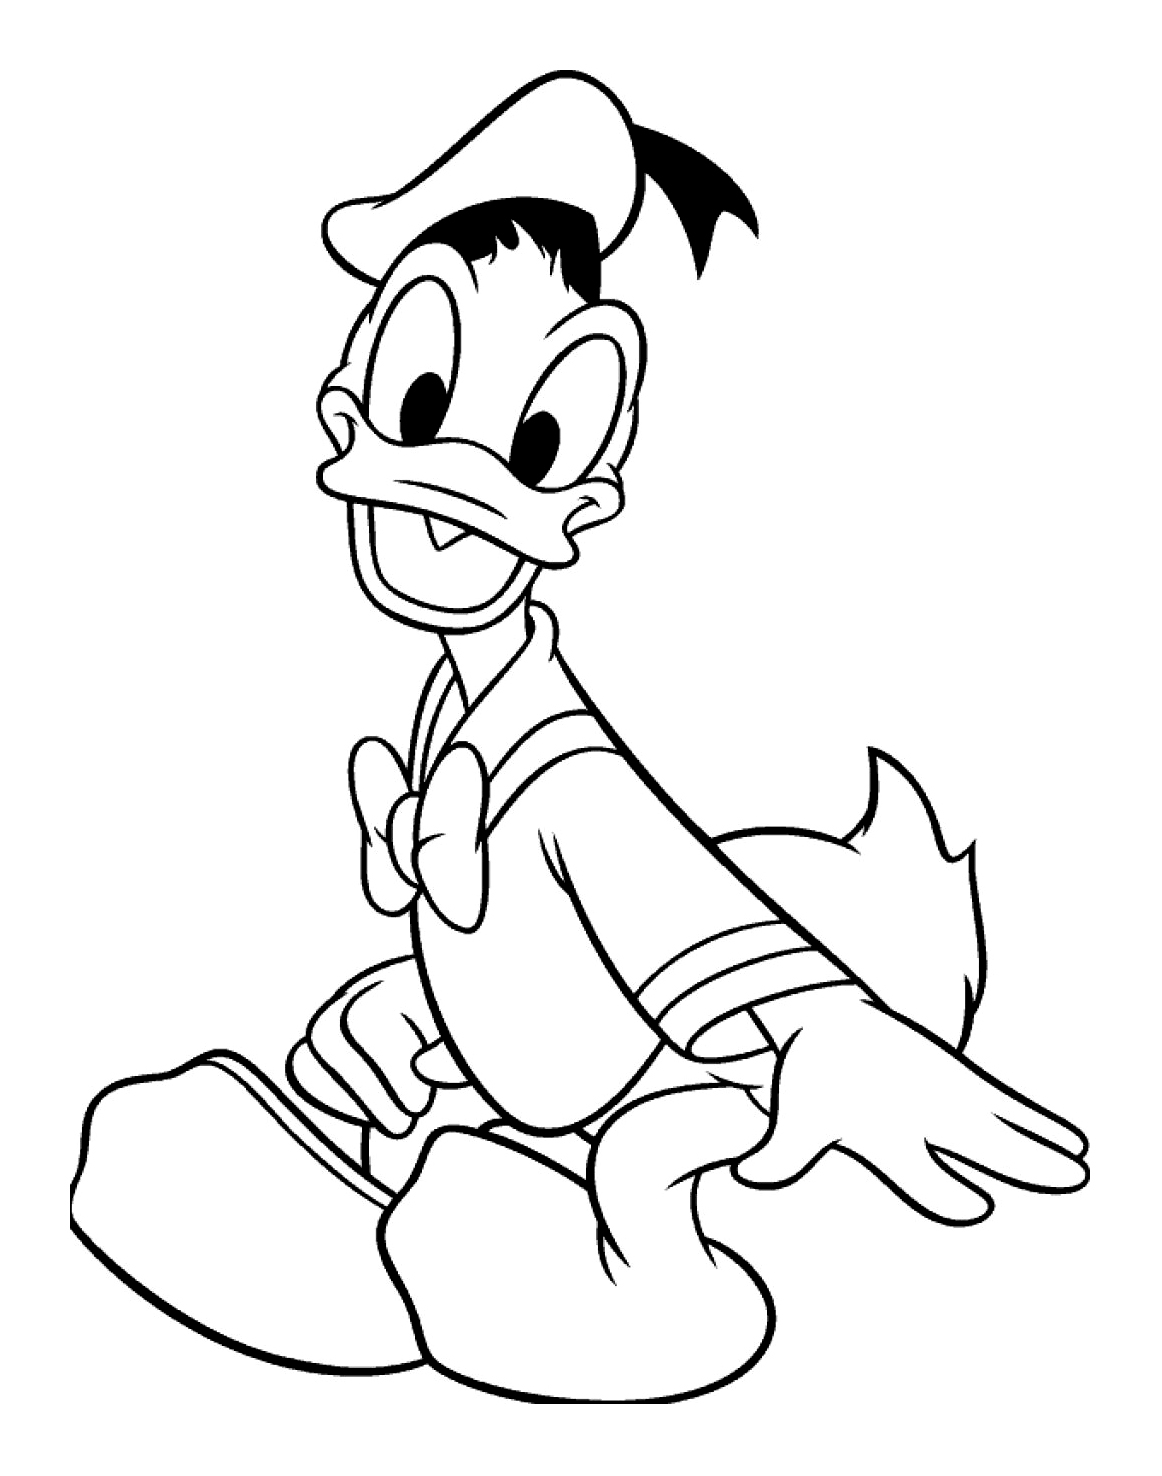 Donald sorridente, uma das personagens mais antigas da Disney